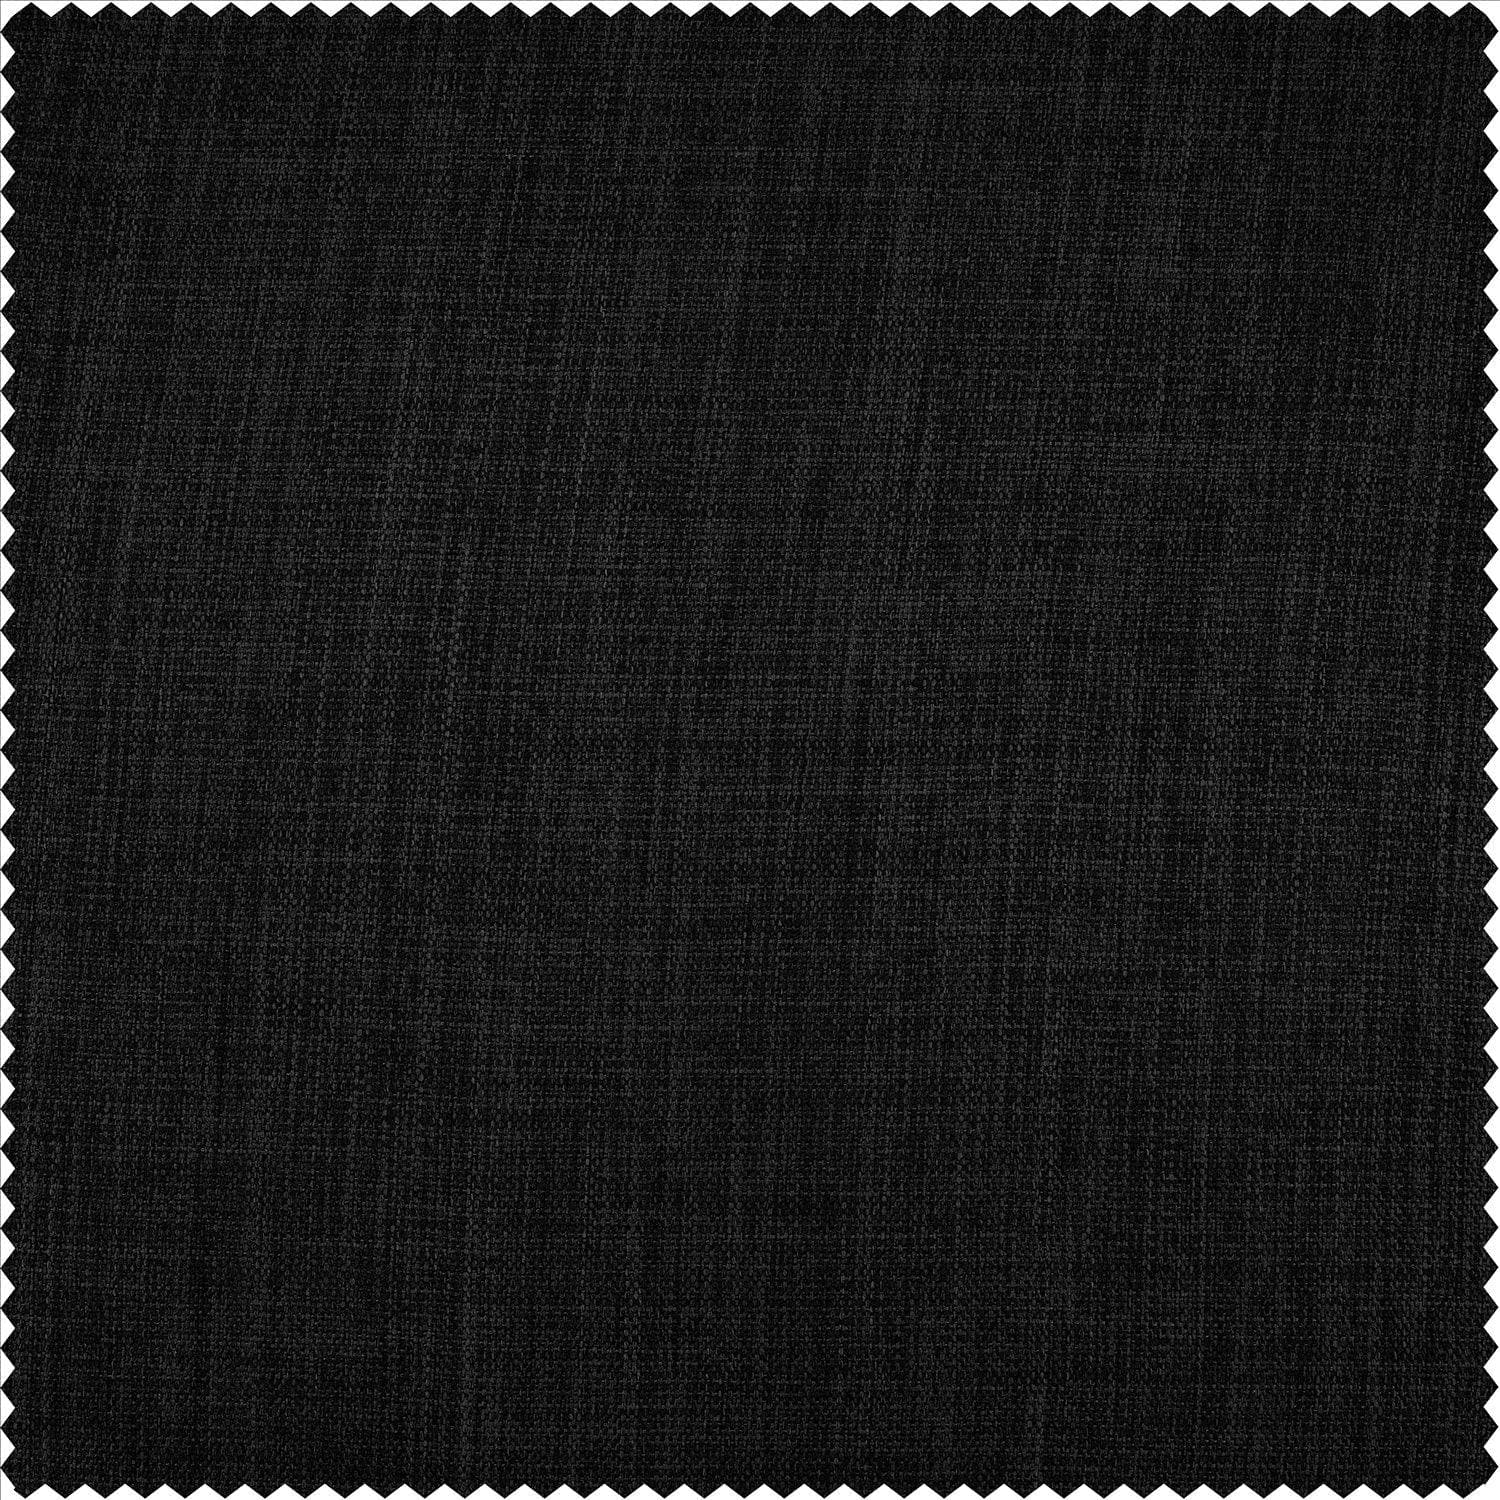 Essential Black Textured Faux Linen Room Darkening Curtain